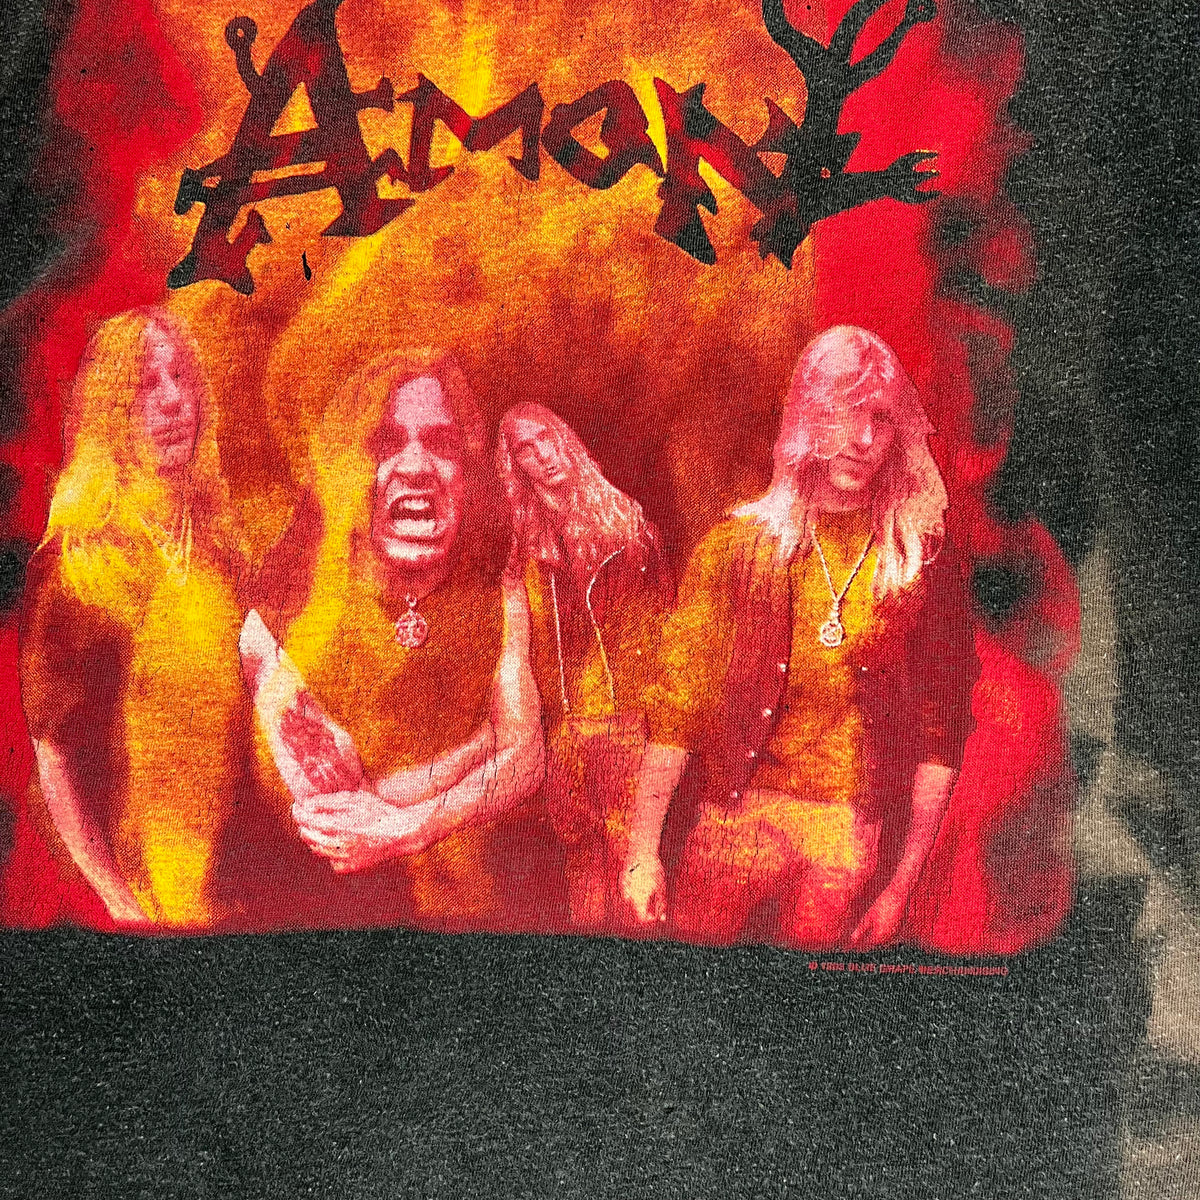 Vintage Deicide &quot;Amon&quot; Feasting The Beast &#39;93 Tour T-Shirt